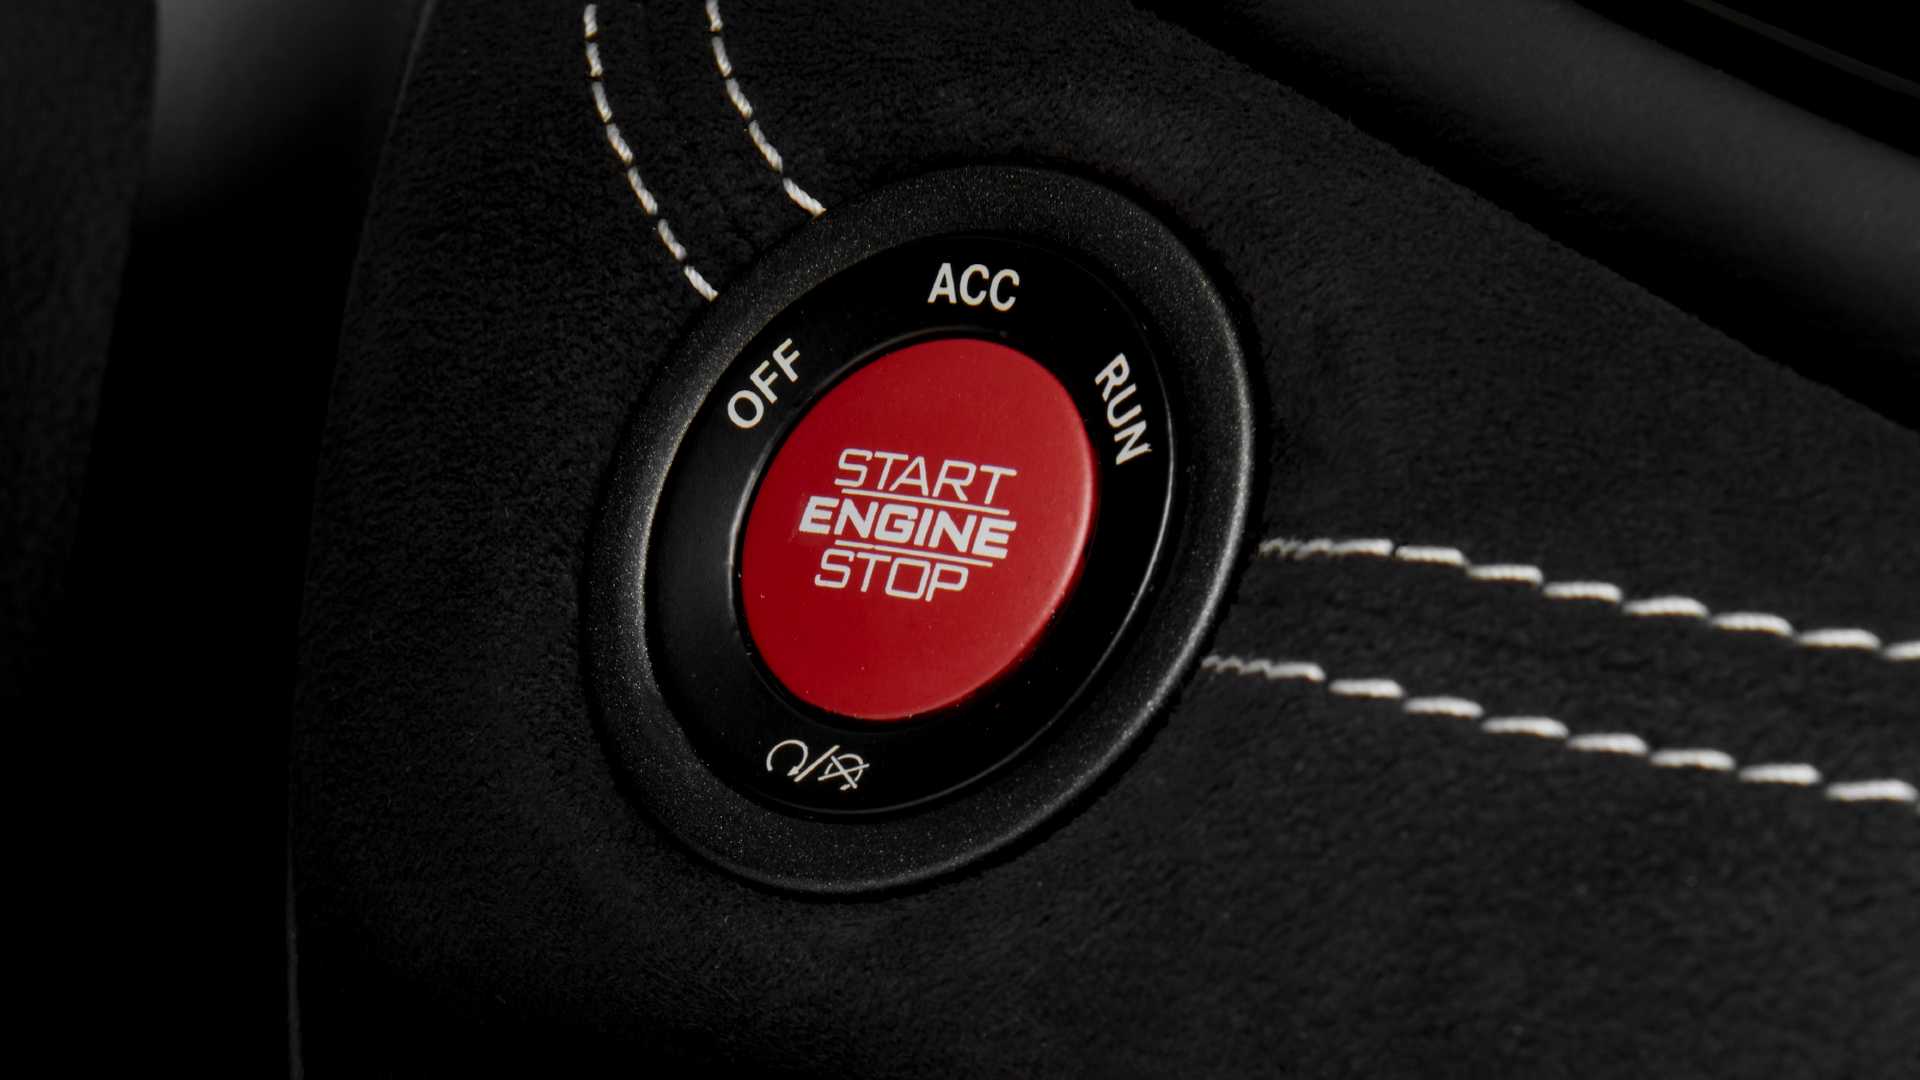 دودج تكشف عن دورانجو SRT هيلكات 2021 كأقوى SUV في العالم 70